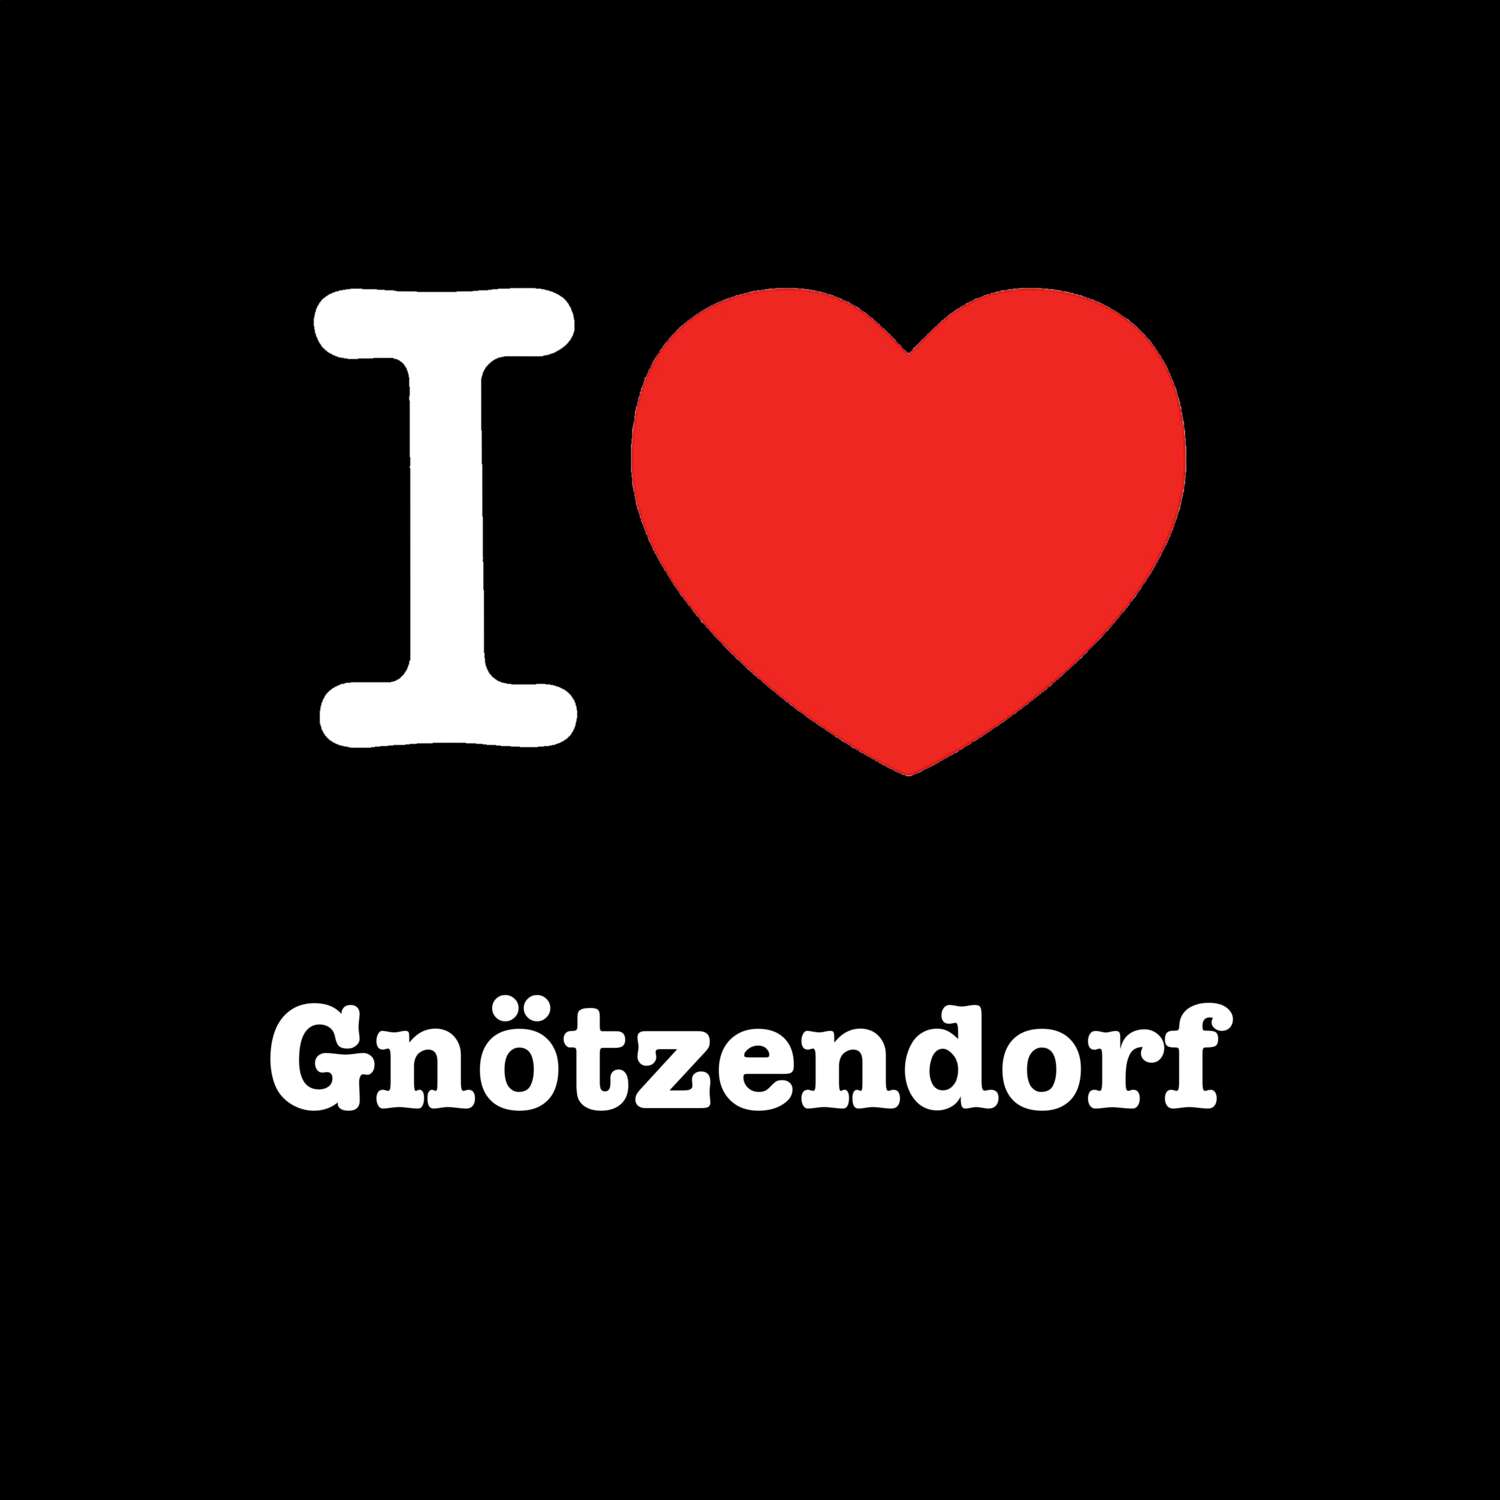 Gnötzendorf T-Shirt »I love«